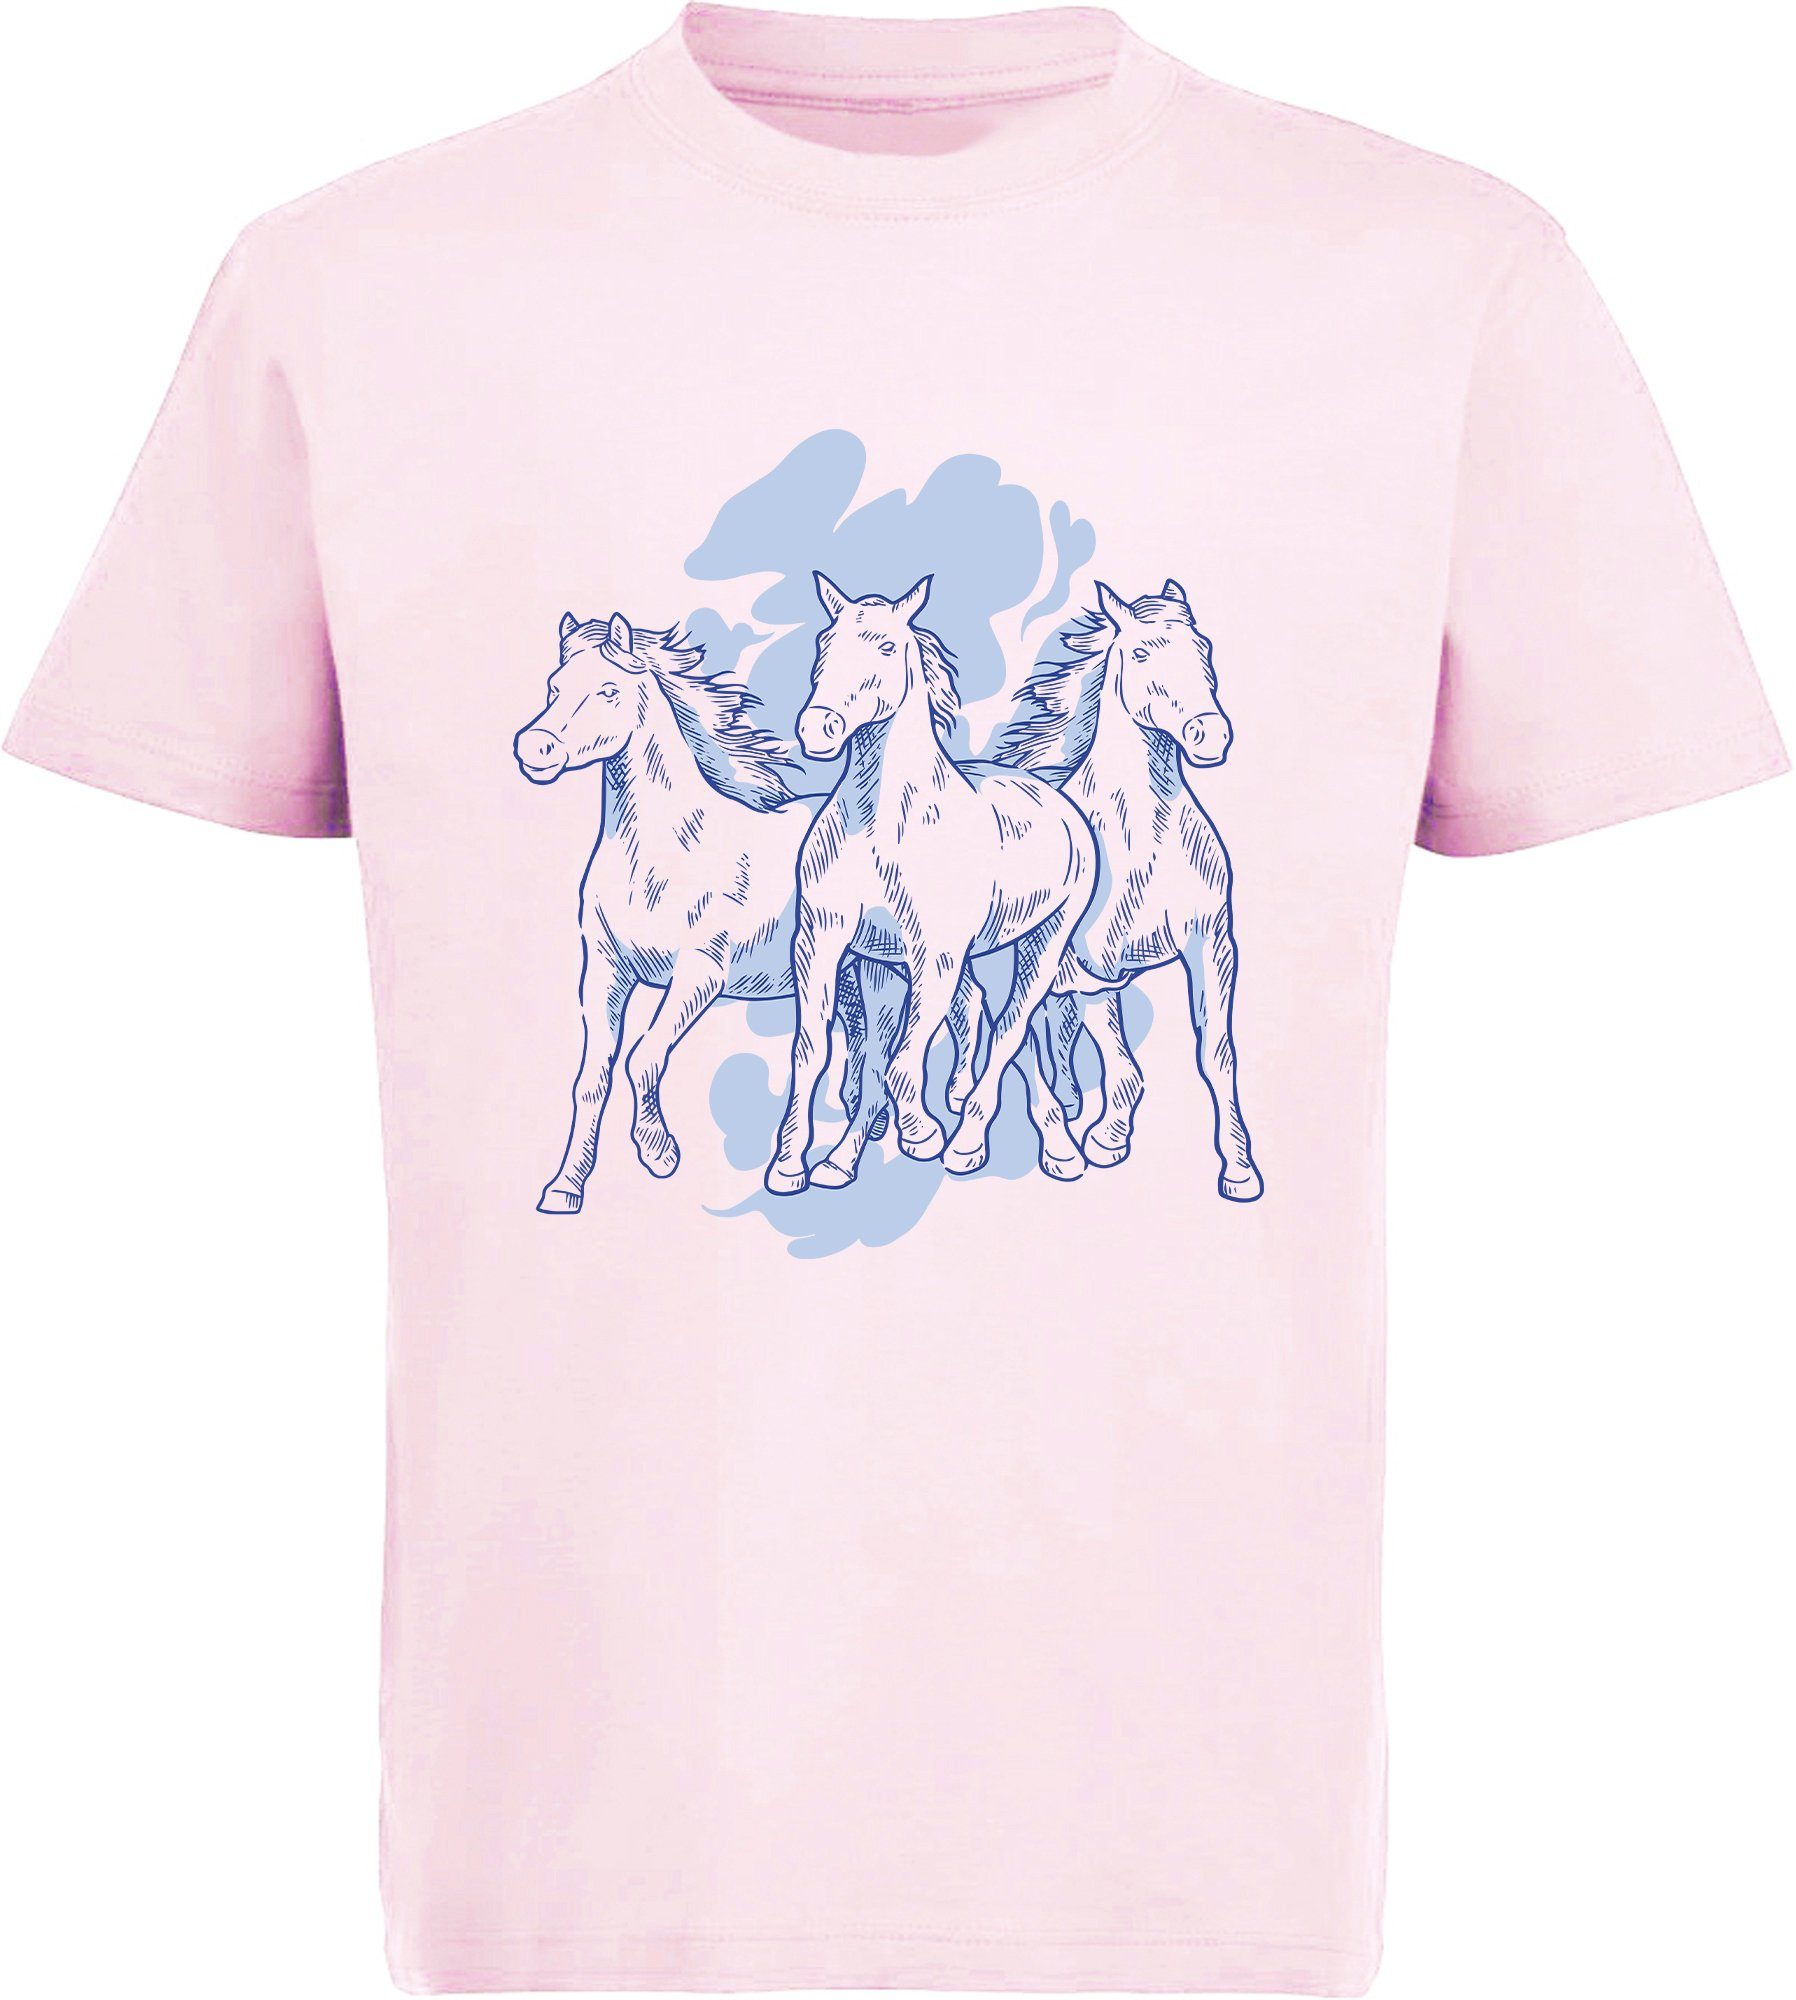 MyDesign24 Print-Shirt rosa 3 T-Shirt mit Mädchen i141 Pferden Aufdruck, Baumwollshirt bedrucktes mit